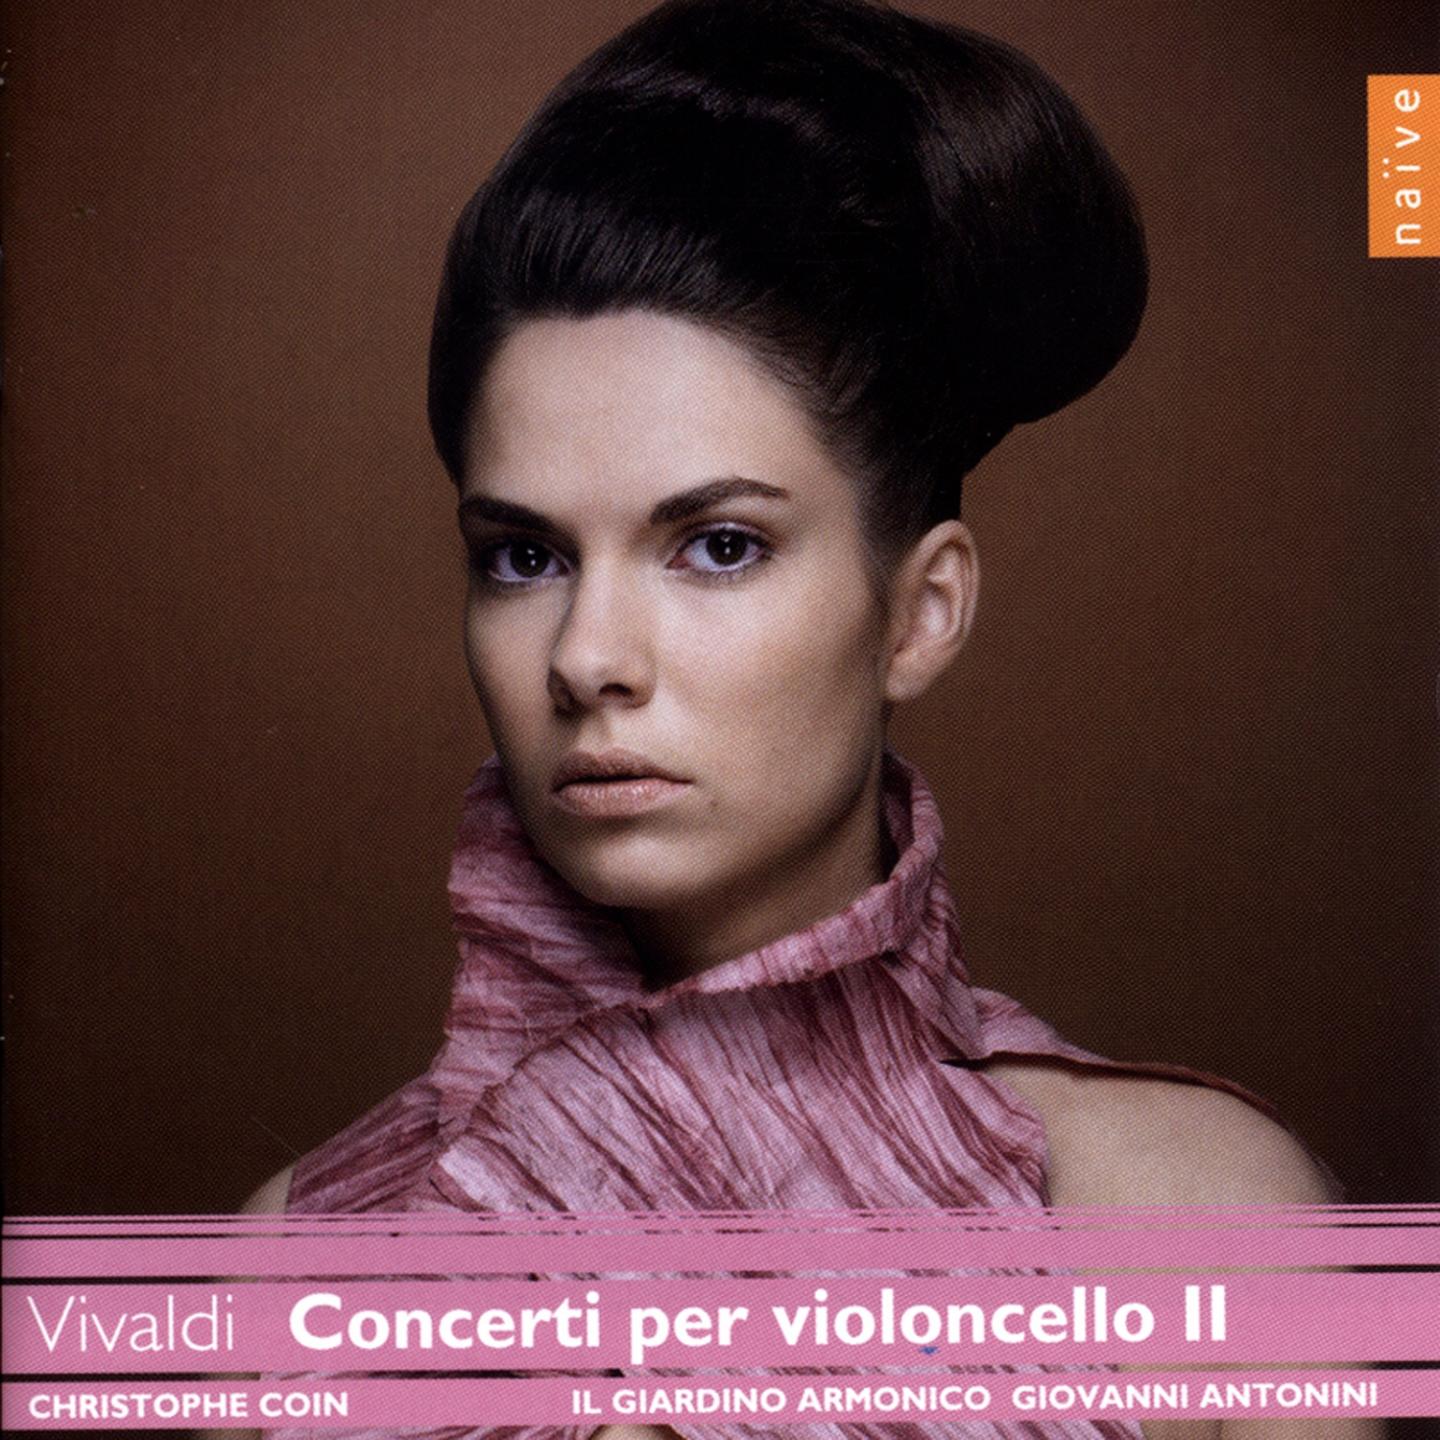 Vivaldi: Concerti per violoncello II (Vivaldi Edition)